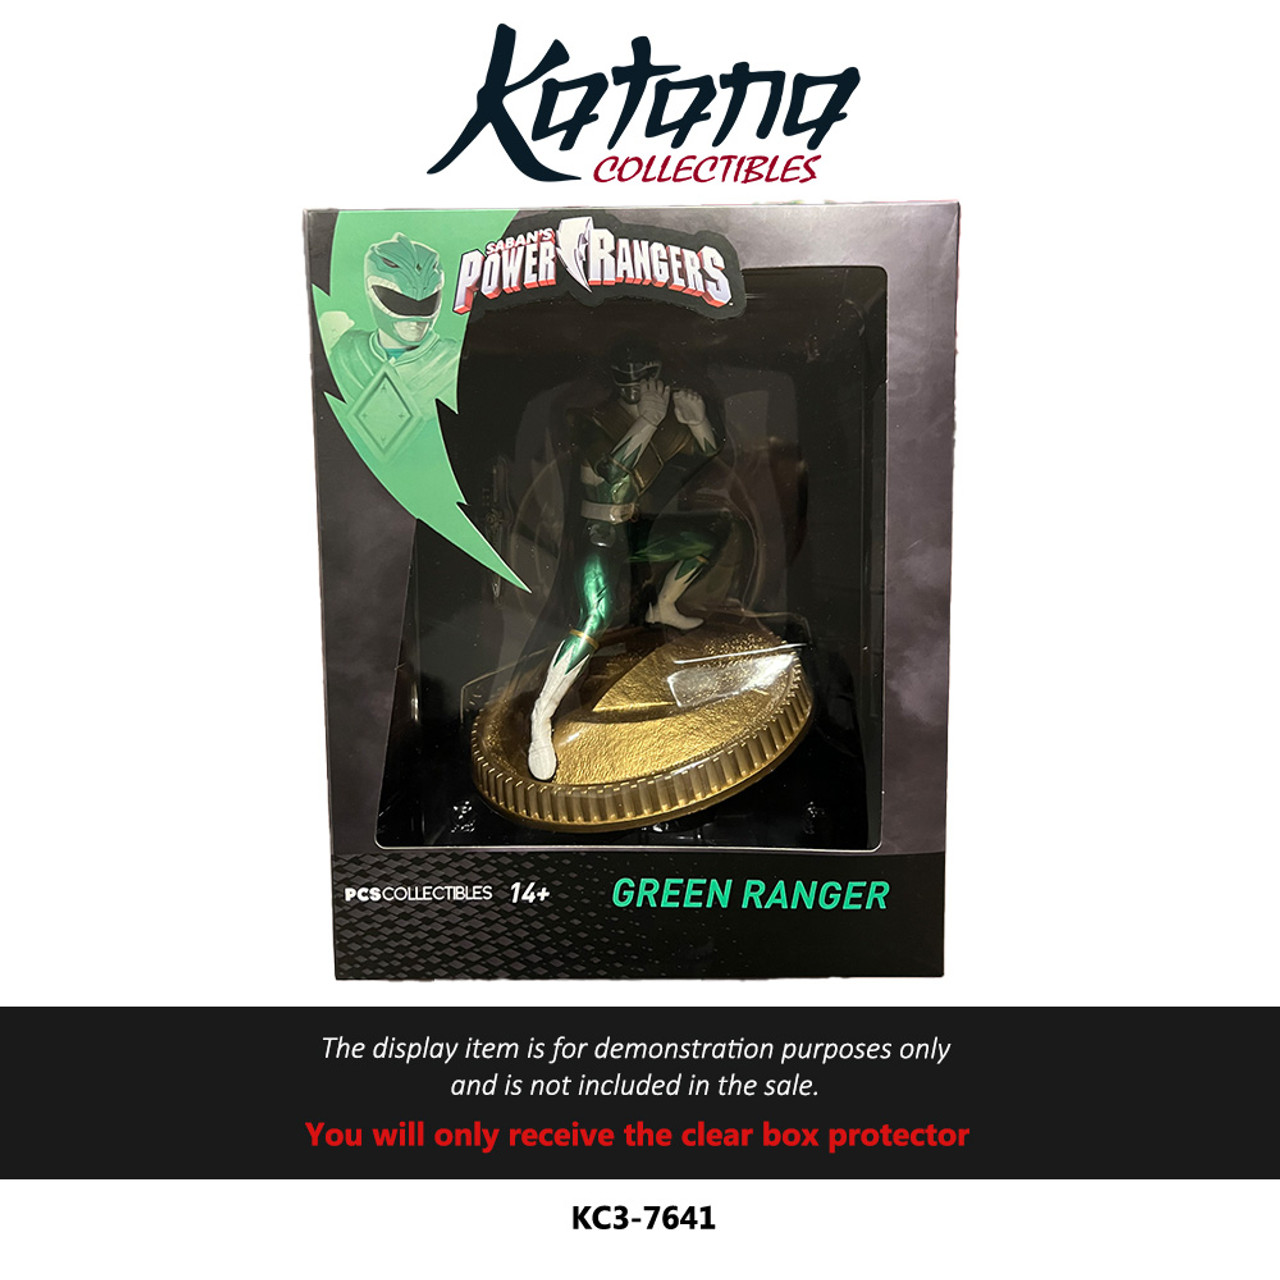 Katana Collectibles Protector For PCS Collectibles - Green Ranger